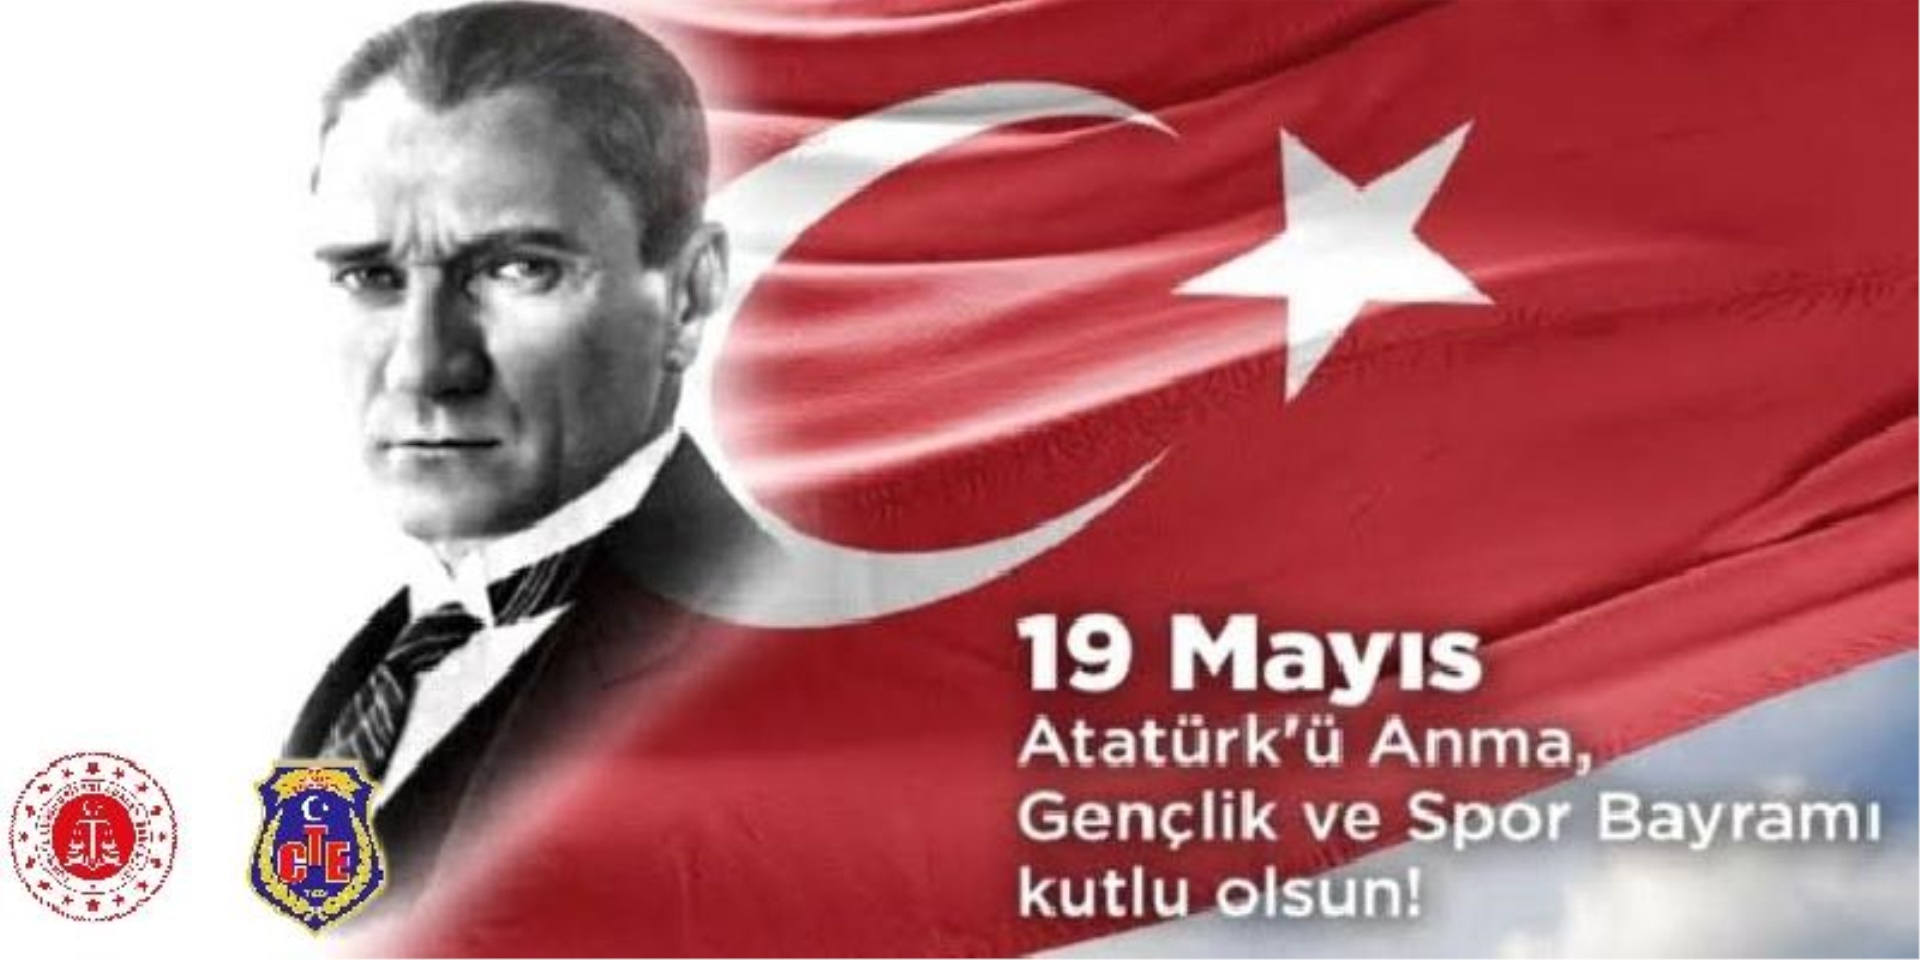 19 Mayıs Atatürk'ü Anma Gençlik ve Spor Bayramı Kutlu Olsun.